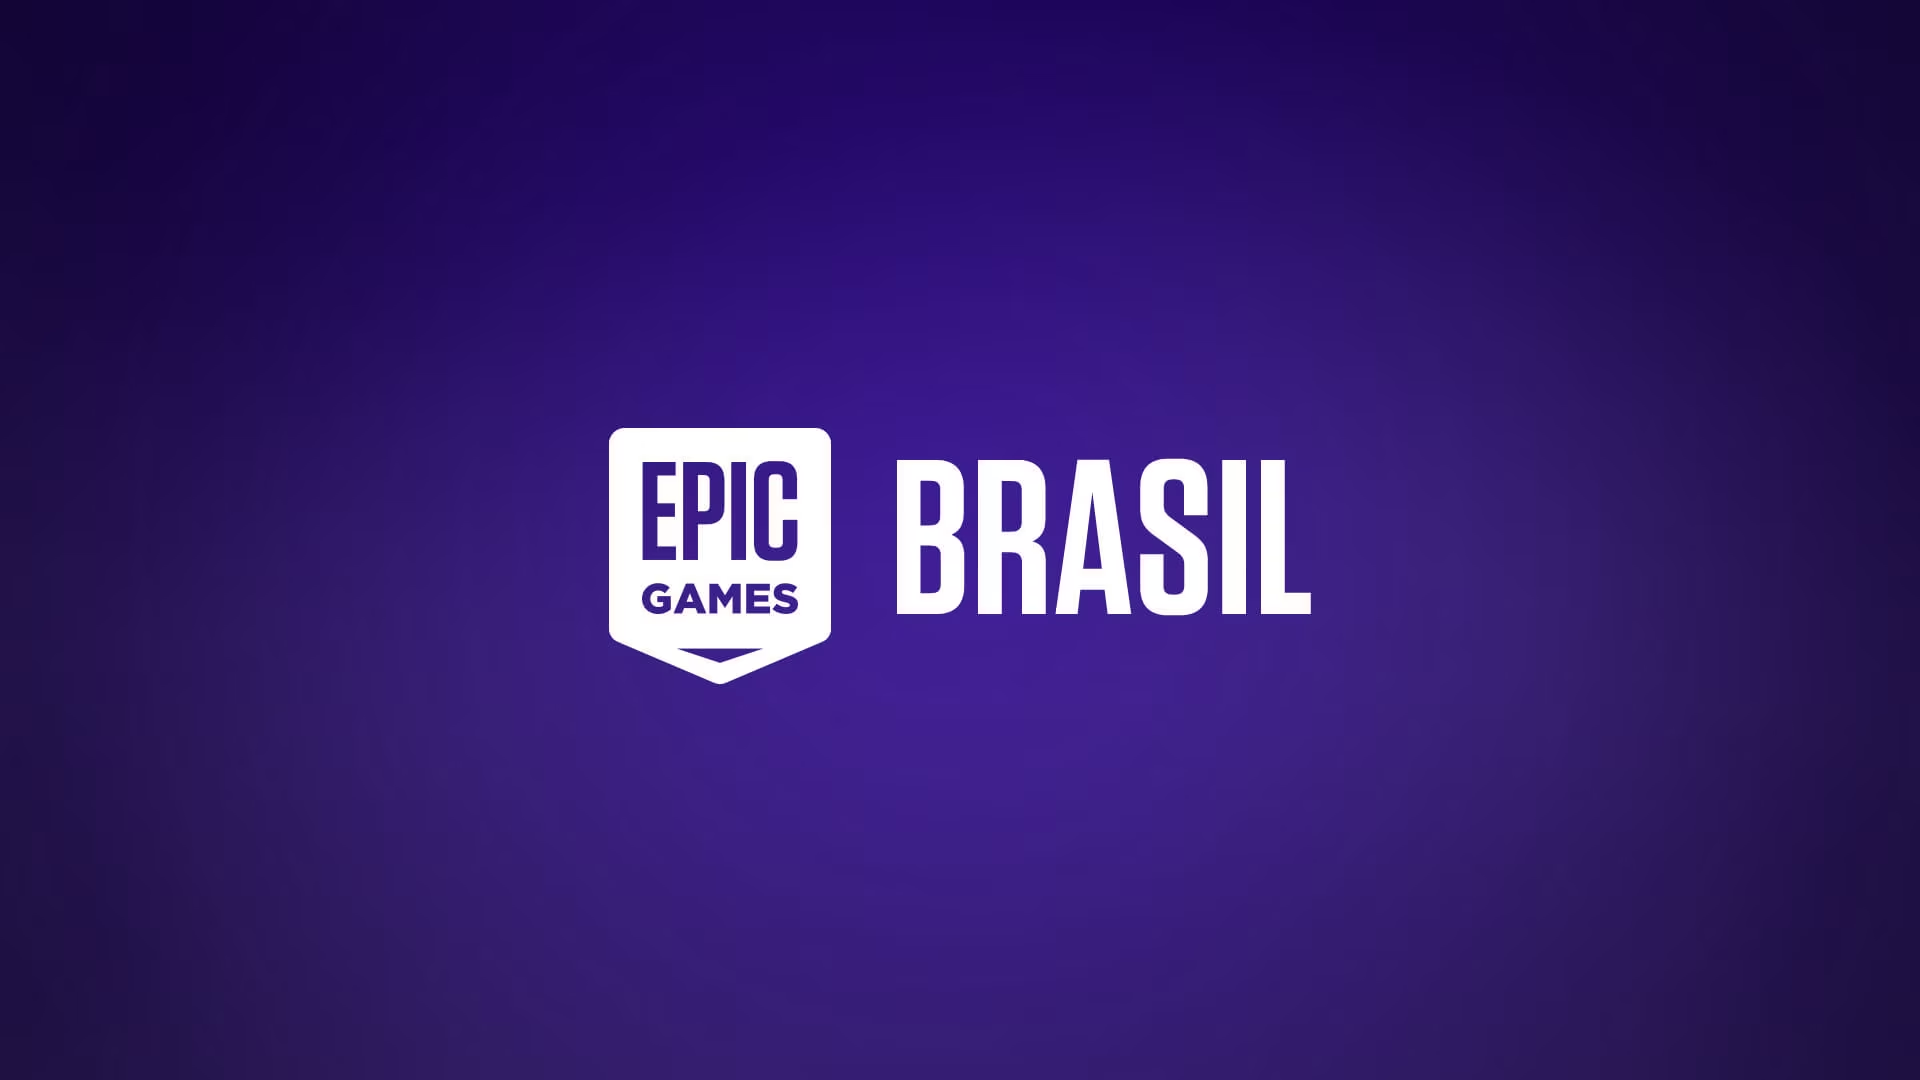 Epic Games Store irá distribuir 17 jogos gratuitos durante o período  natalino - Notícias do Maranhão, do Brasil e do Mundo